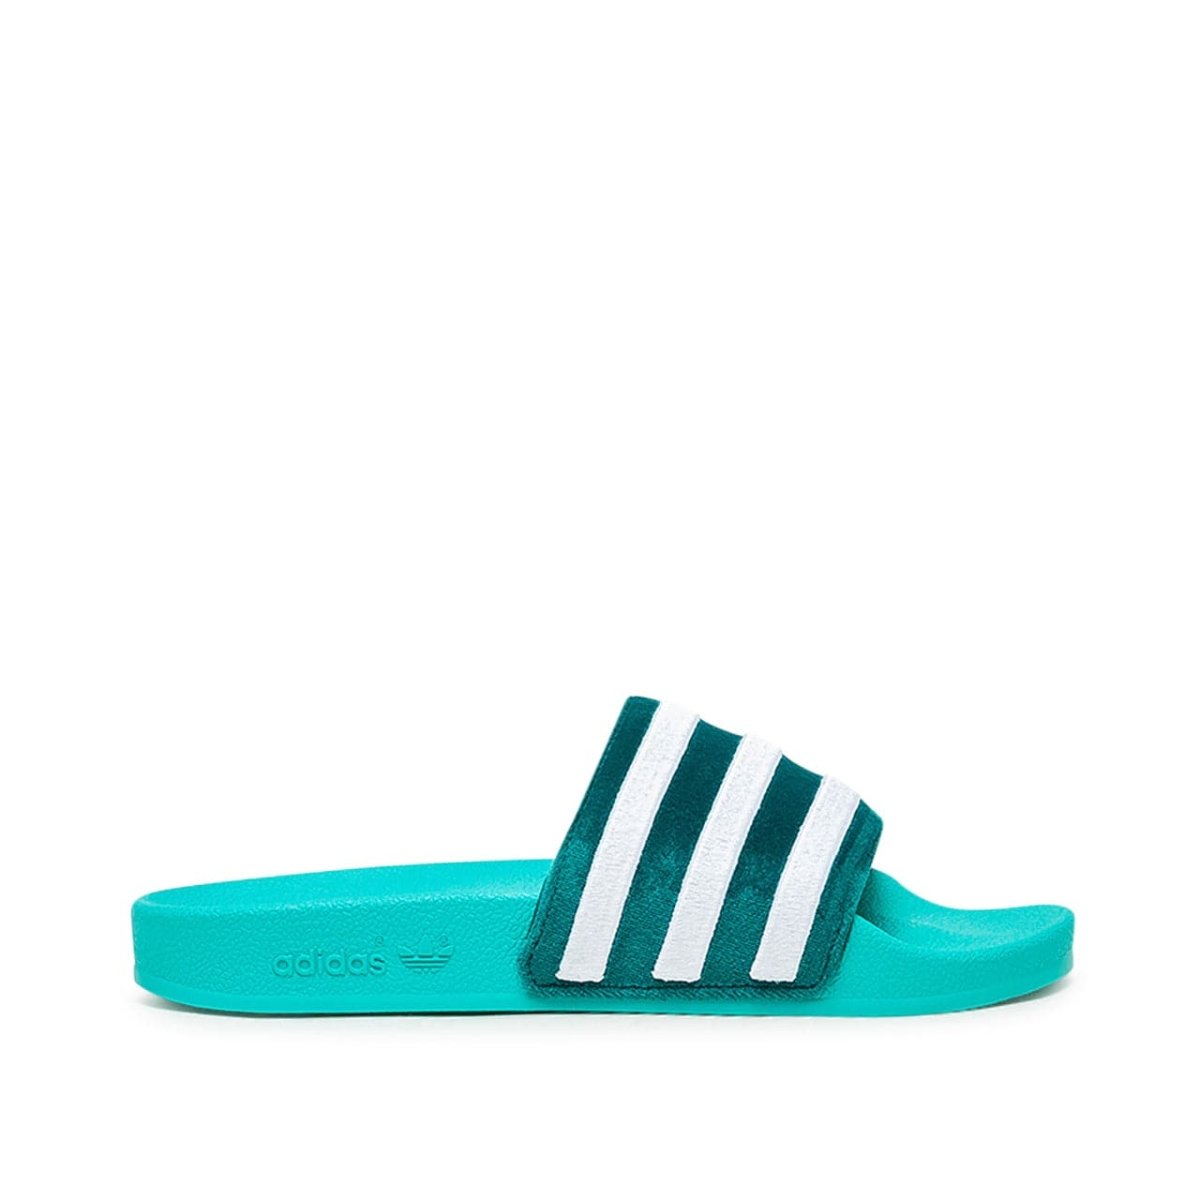 Image of adidas Adilette (Turquoise)